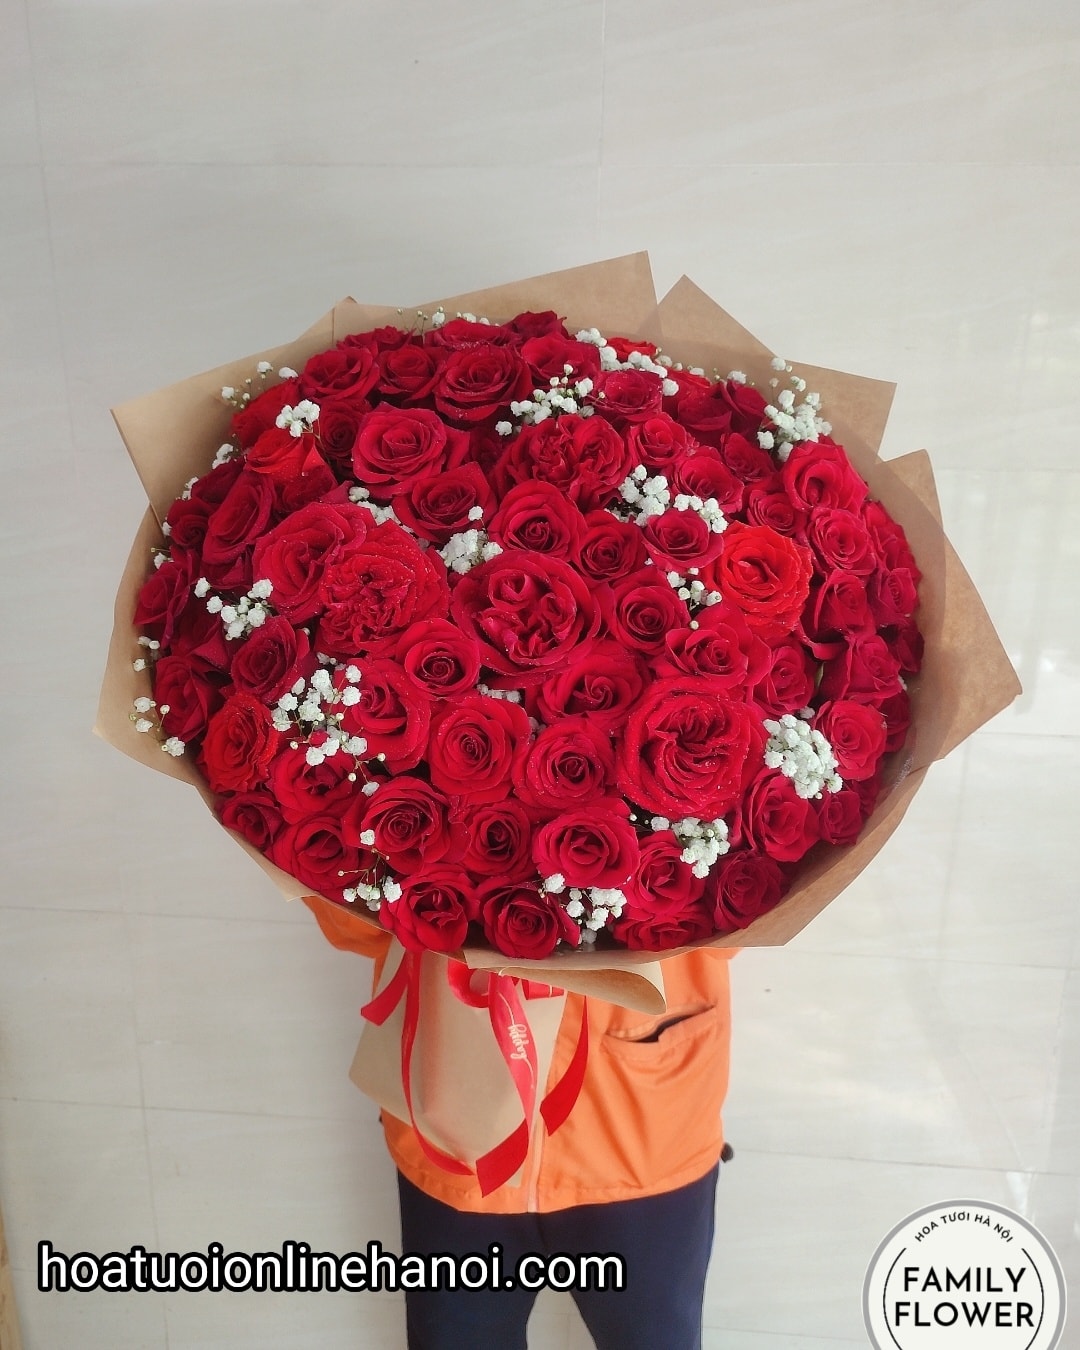 bó hoa hồng đỏ chúc mừng sinh nhật vợ yêu , bạn gái ở Quận Ba Đình - Hà Nội